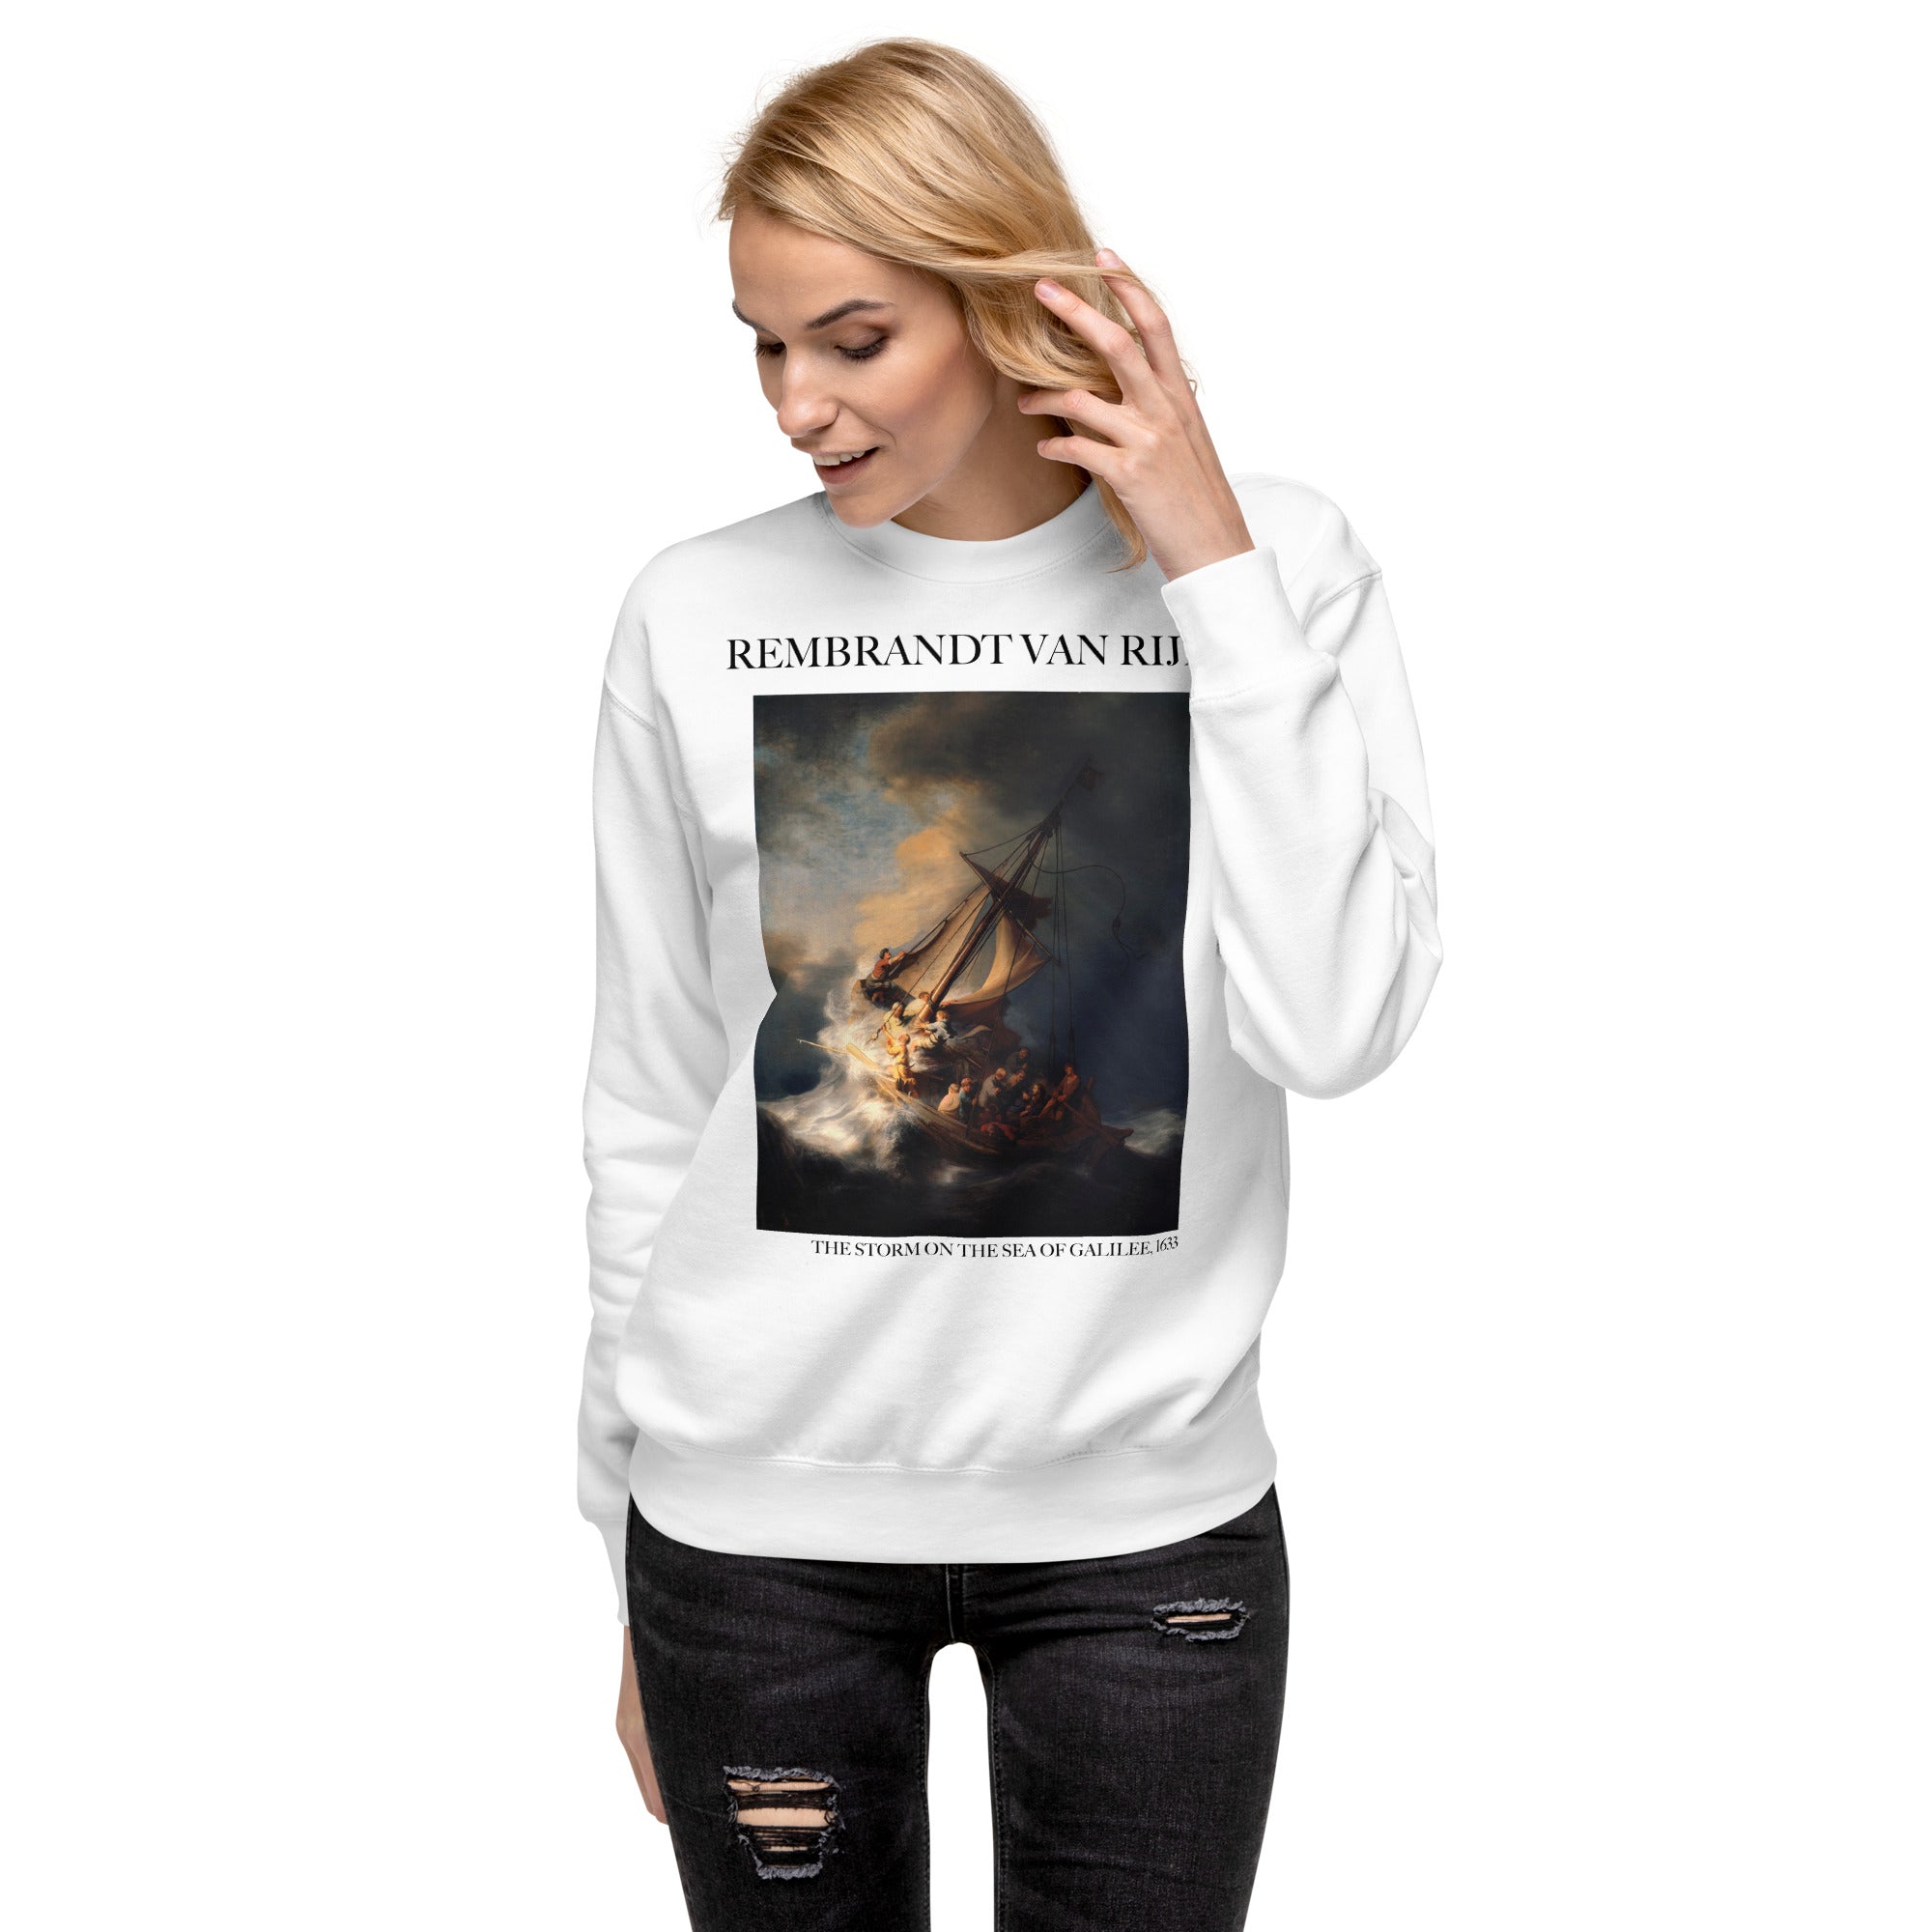 Rembrandt van Rijn 'The Storm on the Sea of Galilee' Famous Painting Sweatshirt | Unisex Premium Sweatshirt